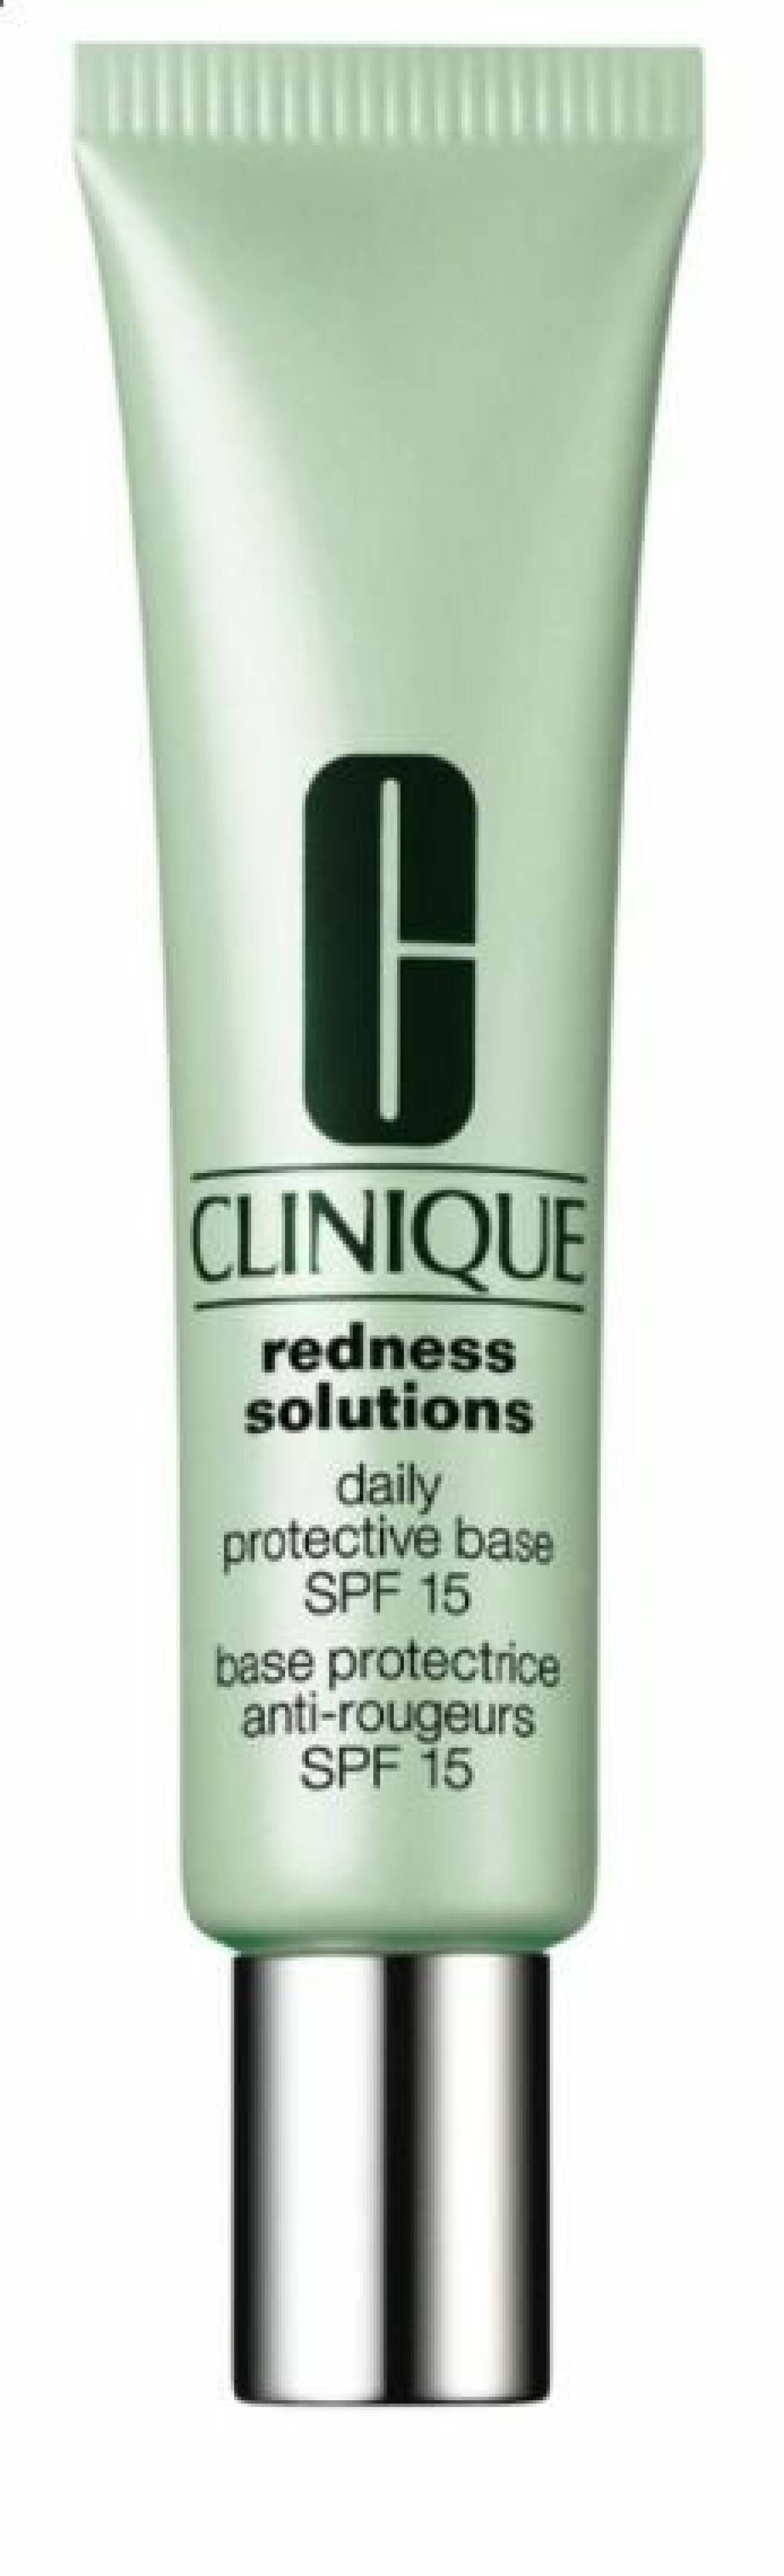 För dig som har rosacea: Cliniques Redness Solution är en oljefri primer med SPF samt gröna pigment som balanserar hudens röda toner. Innehåller lugnande probiotika.